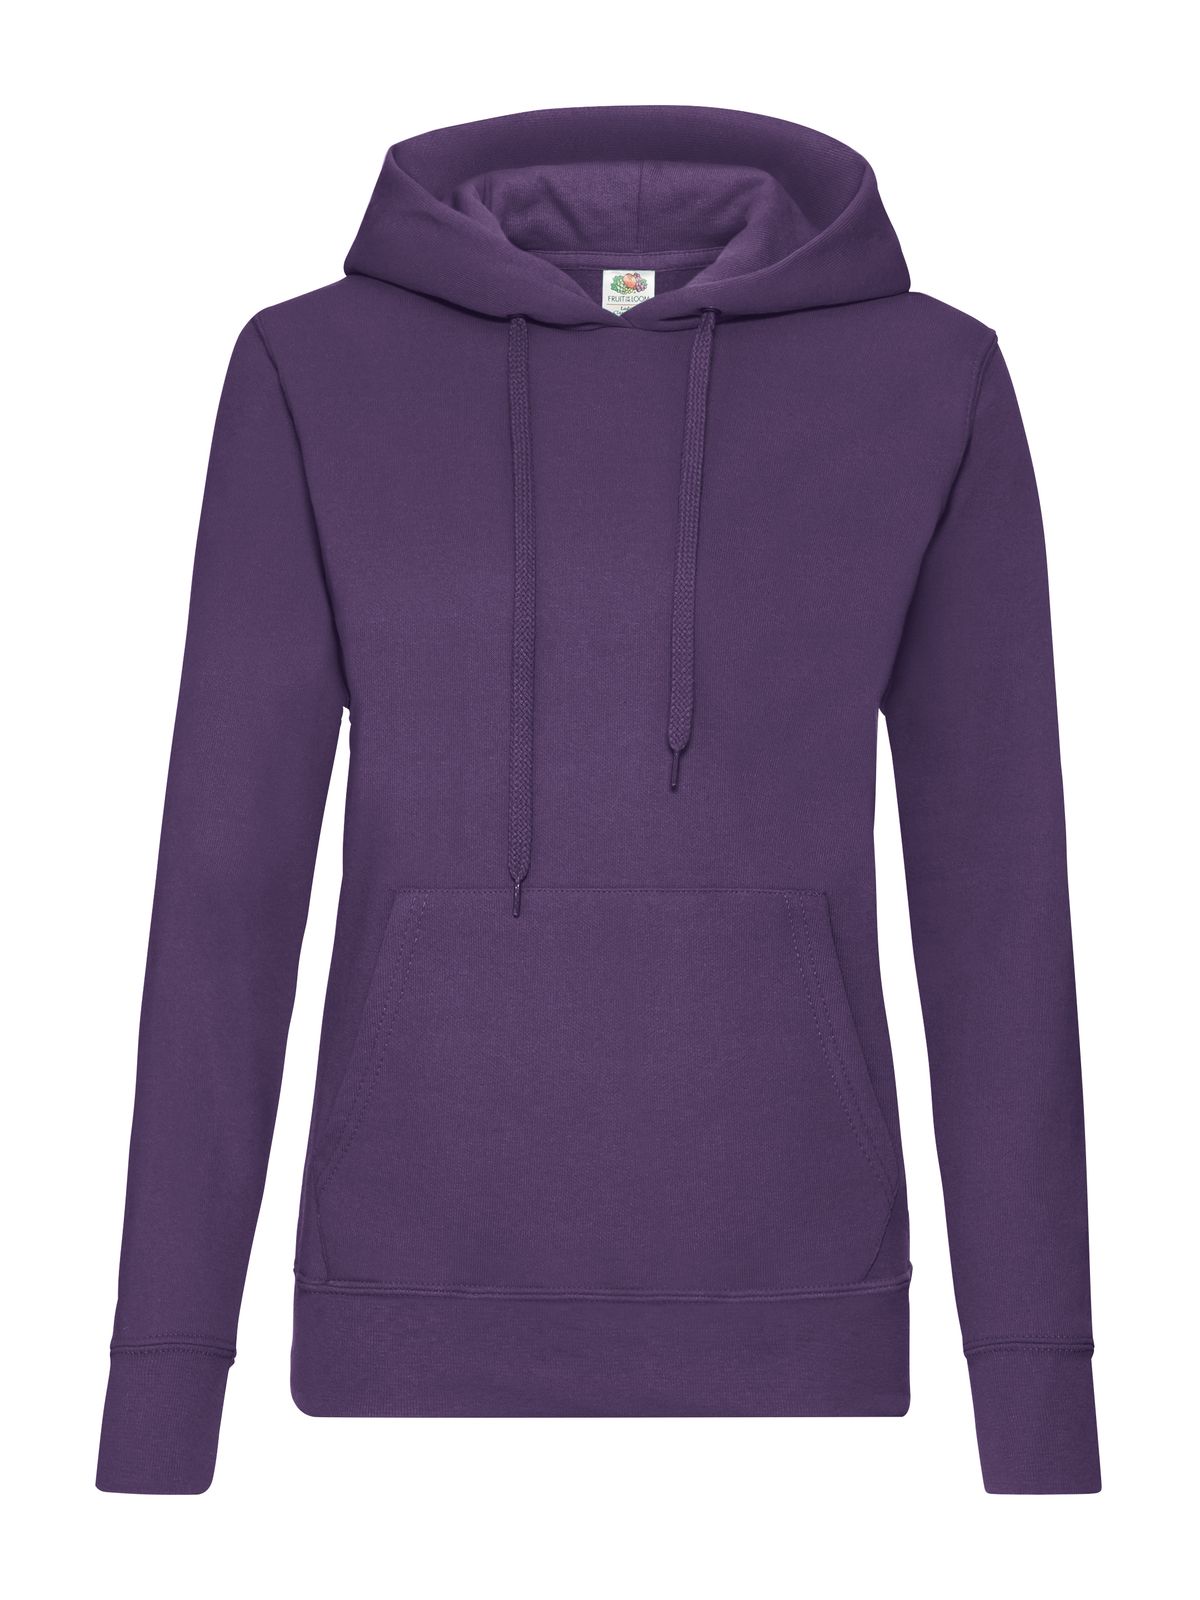 ladies-classic-hooded-sweat-purple.webp